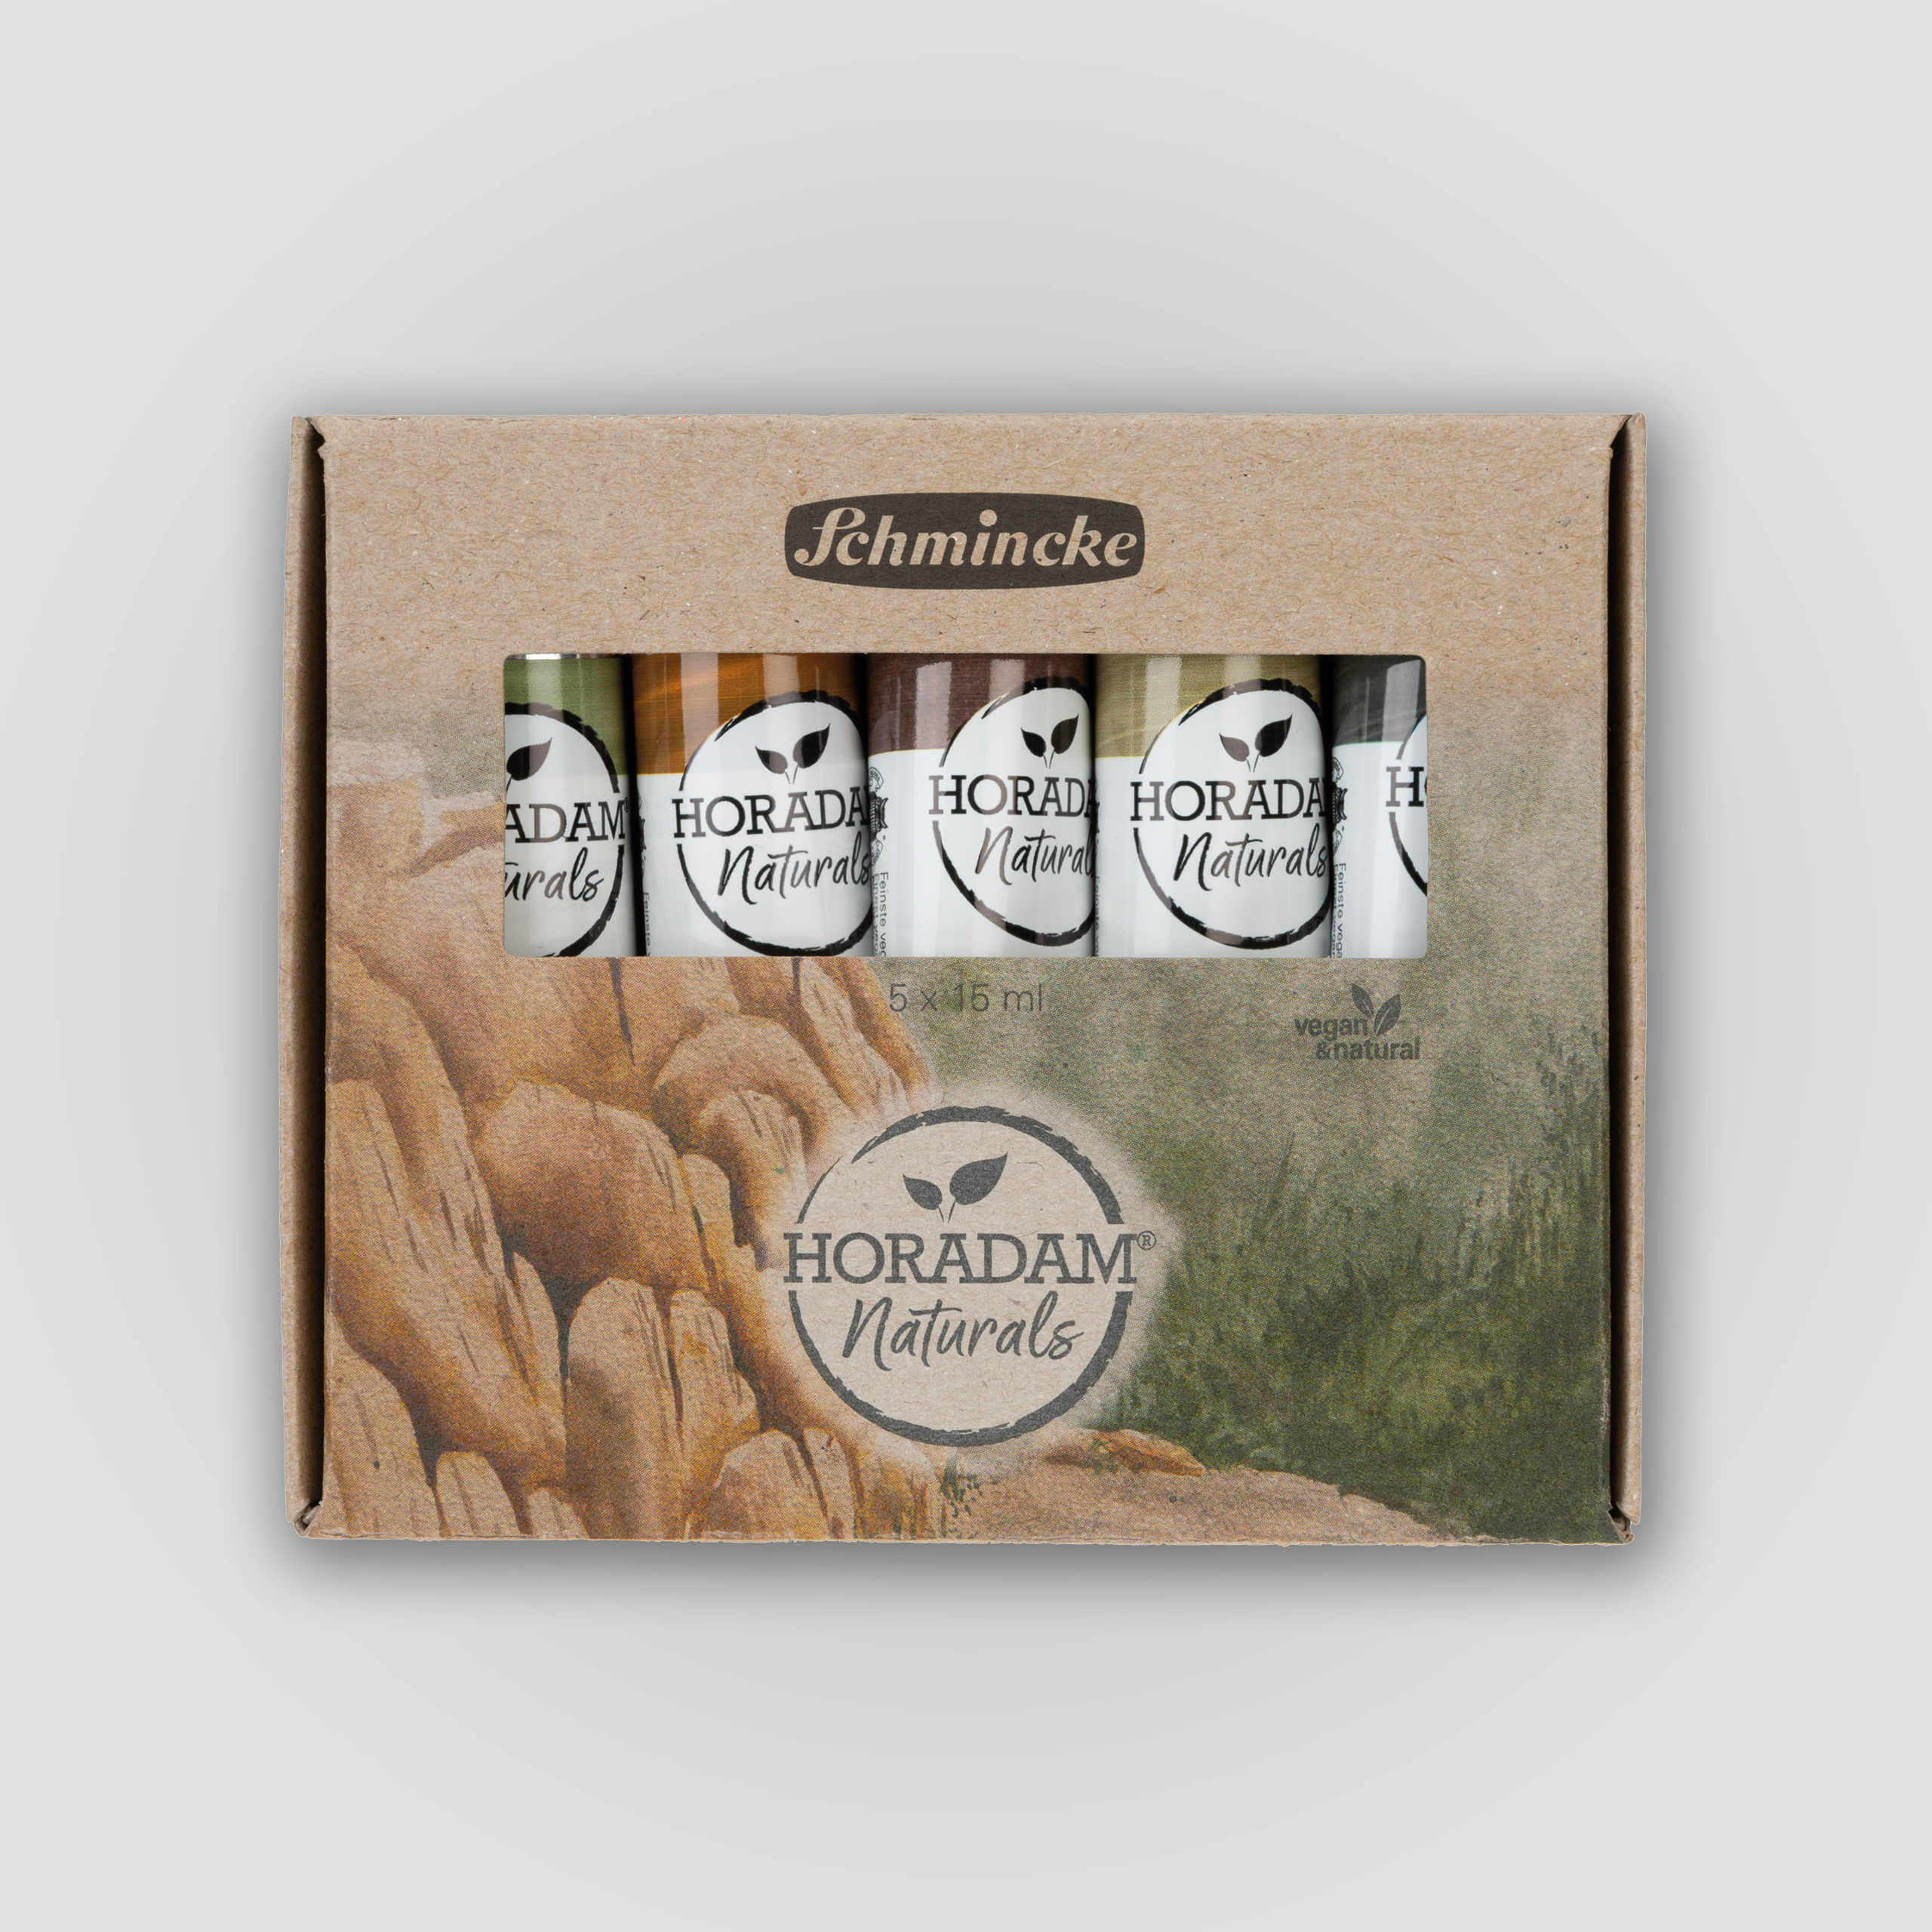 Schmincke Horadam® Naturals set 5x15ml "mineral pigments"